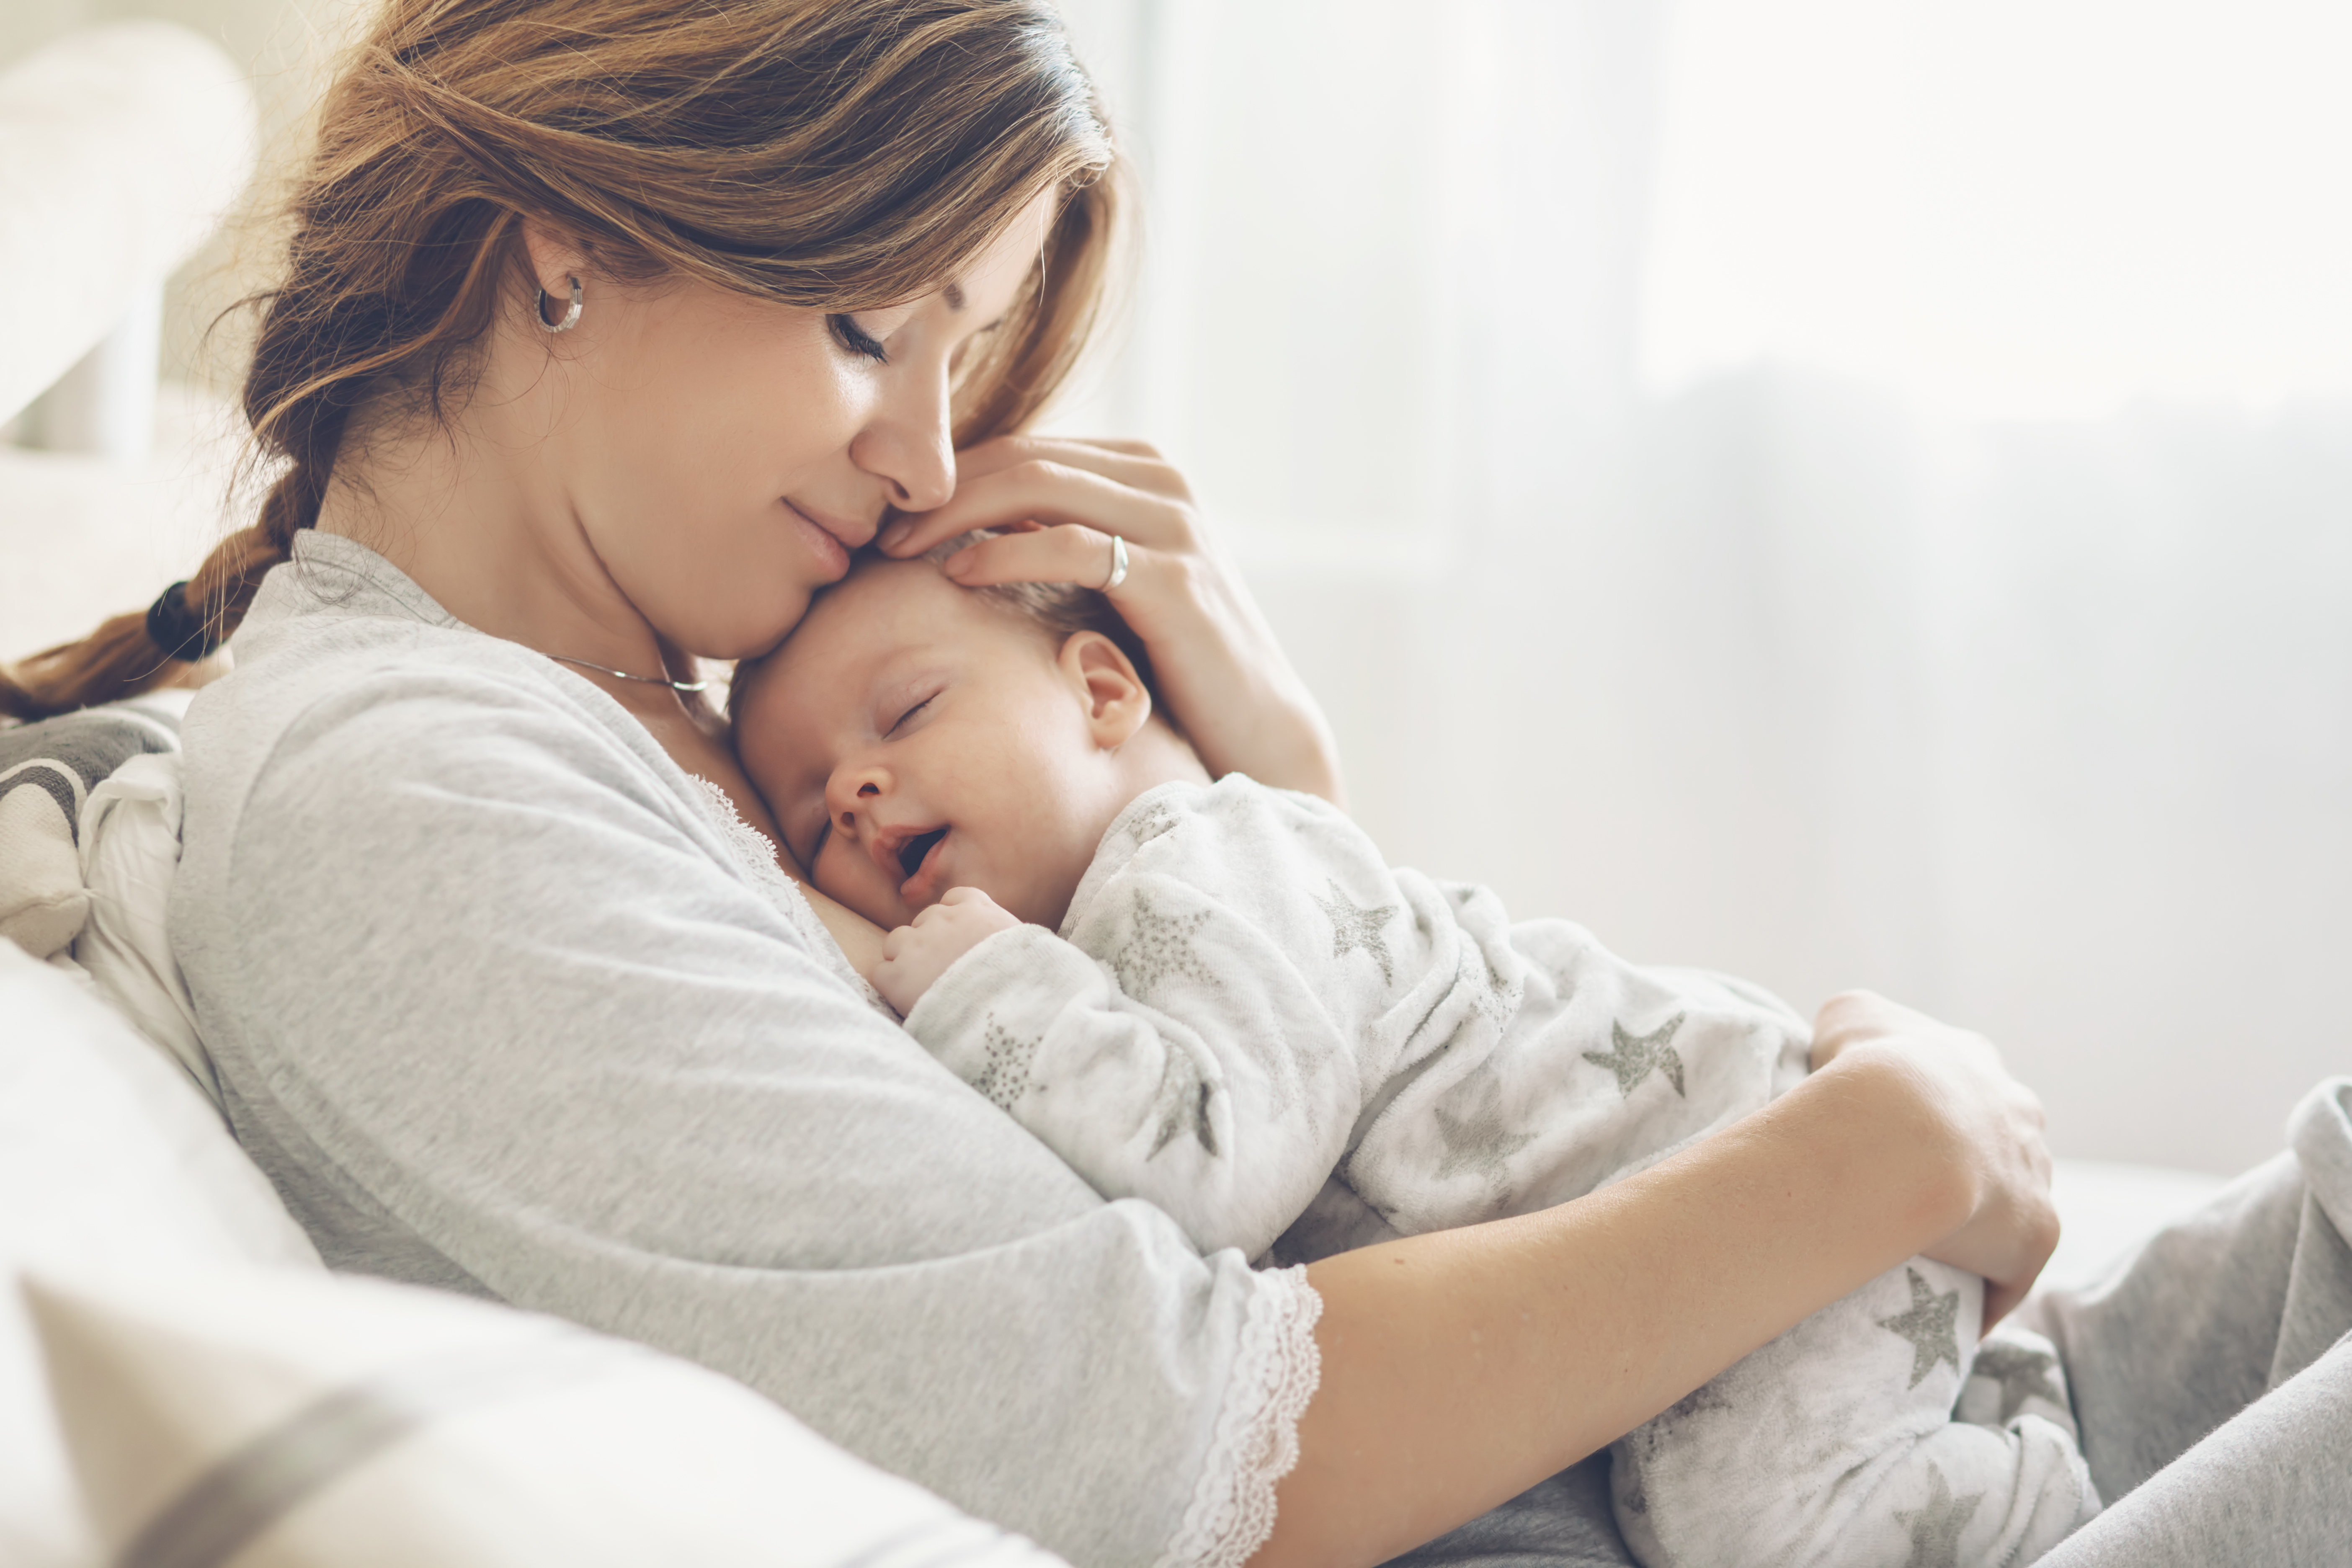 Eine Mutter, die ihr neugeborenes Kind kuschelt | Quelle: Shutterstock